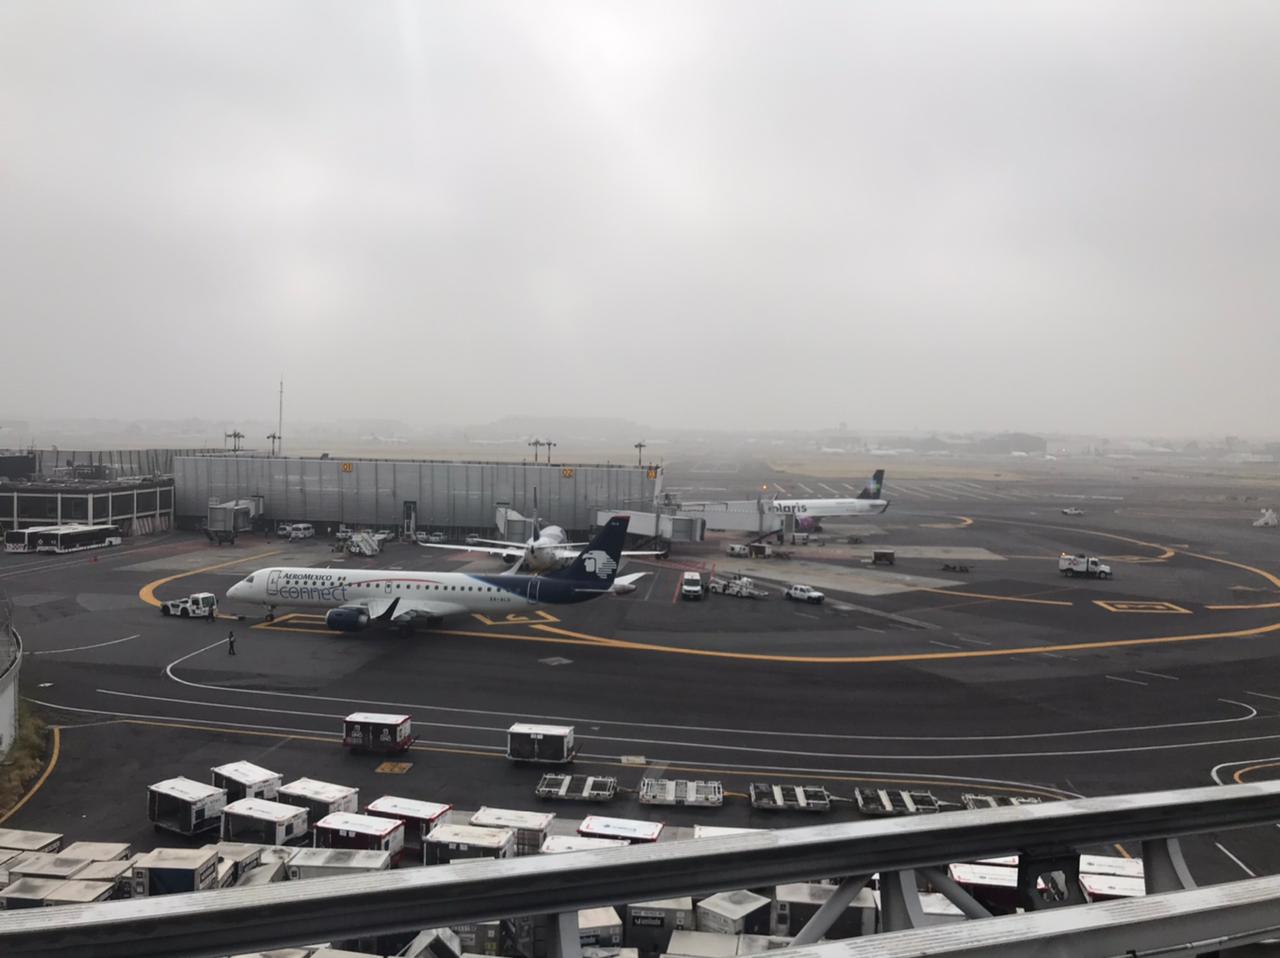 Neblina complica, otra vez, operaciones en el aeropuerto capitalino